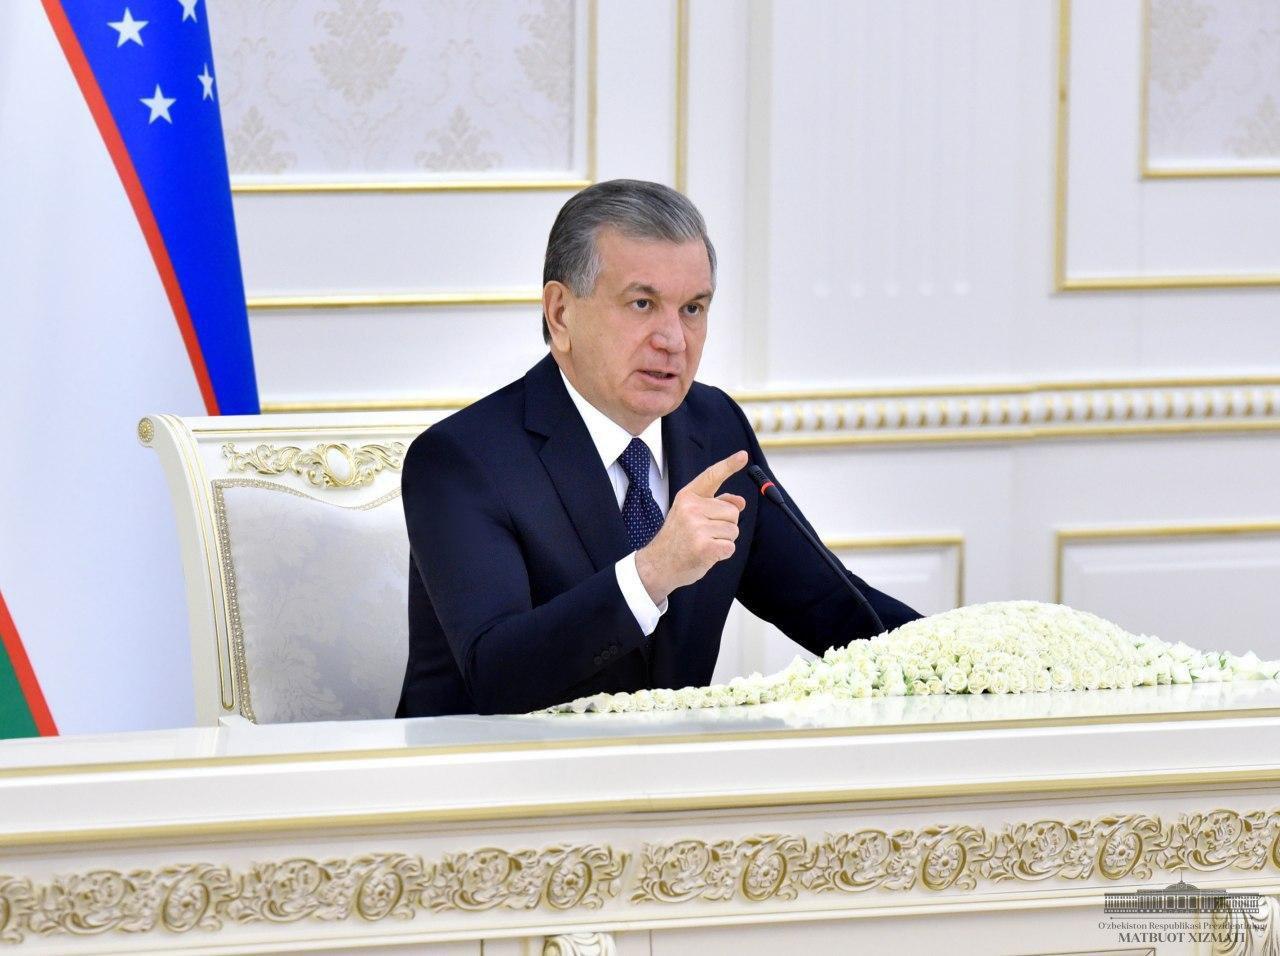 Le président ouzbek Shavkat Mirziyoyev tente de coordonner en Asie Centrale la lutte contre la pandémie et l'aide à l'Afghanistan. (Source : Diplomat)